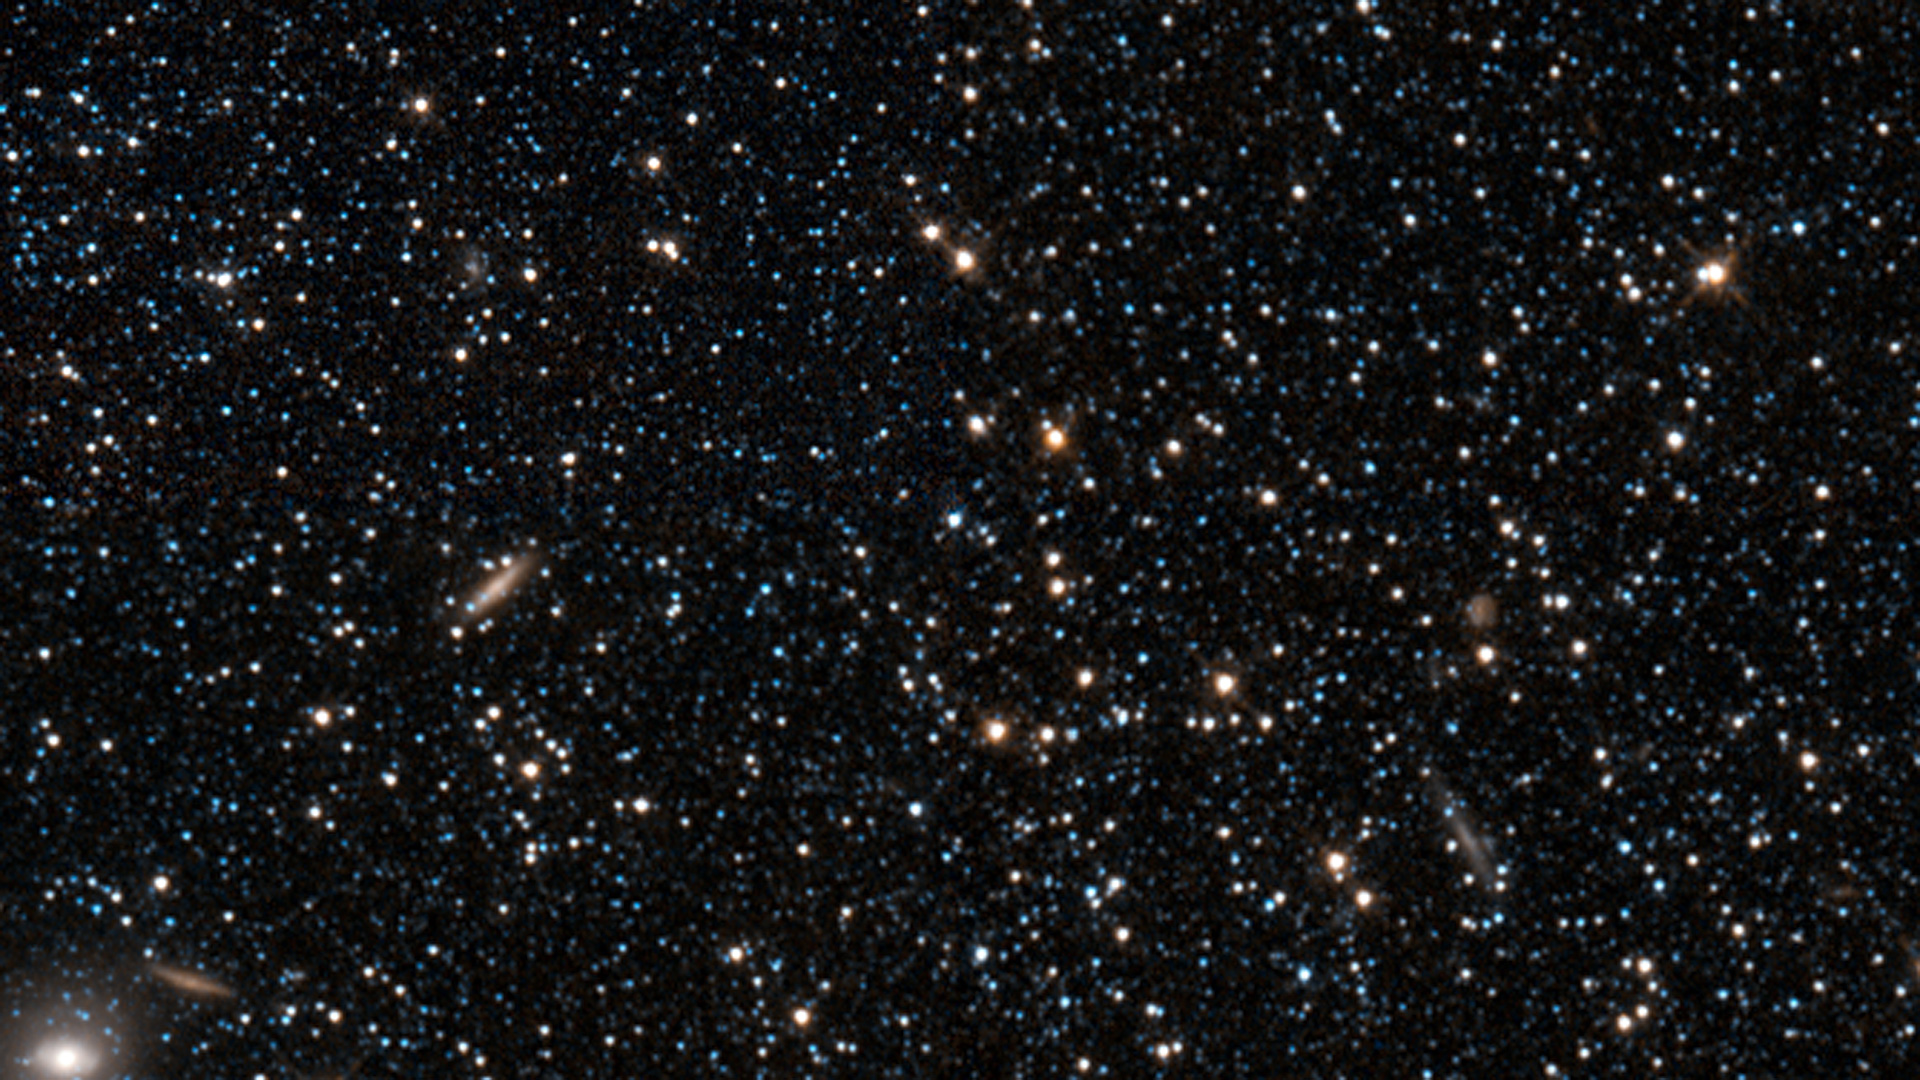 Hubble Deep Field 1080P, 2K, 4K, 5K HD Wallpapers Free, 57% OFF